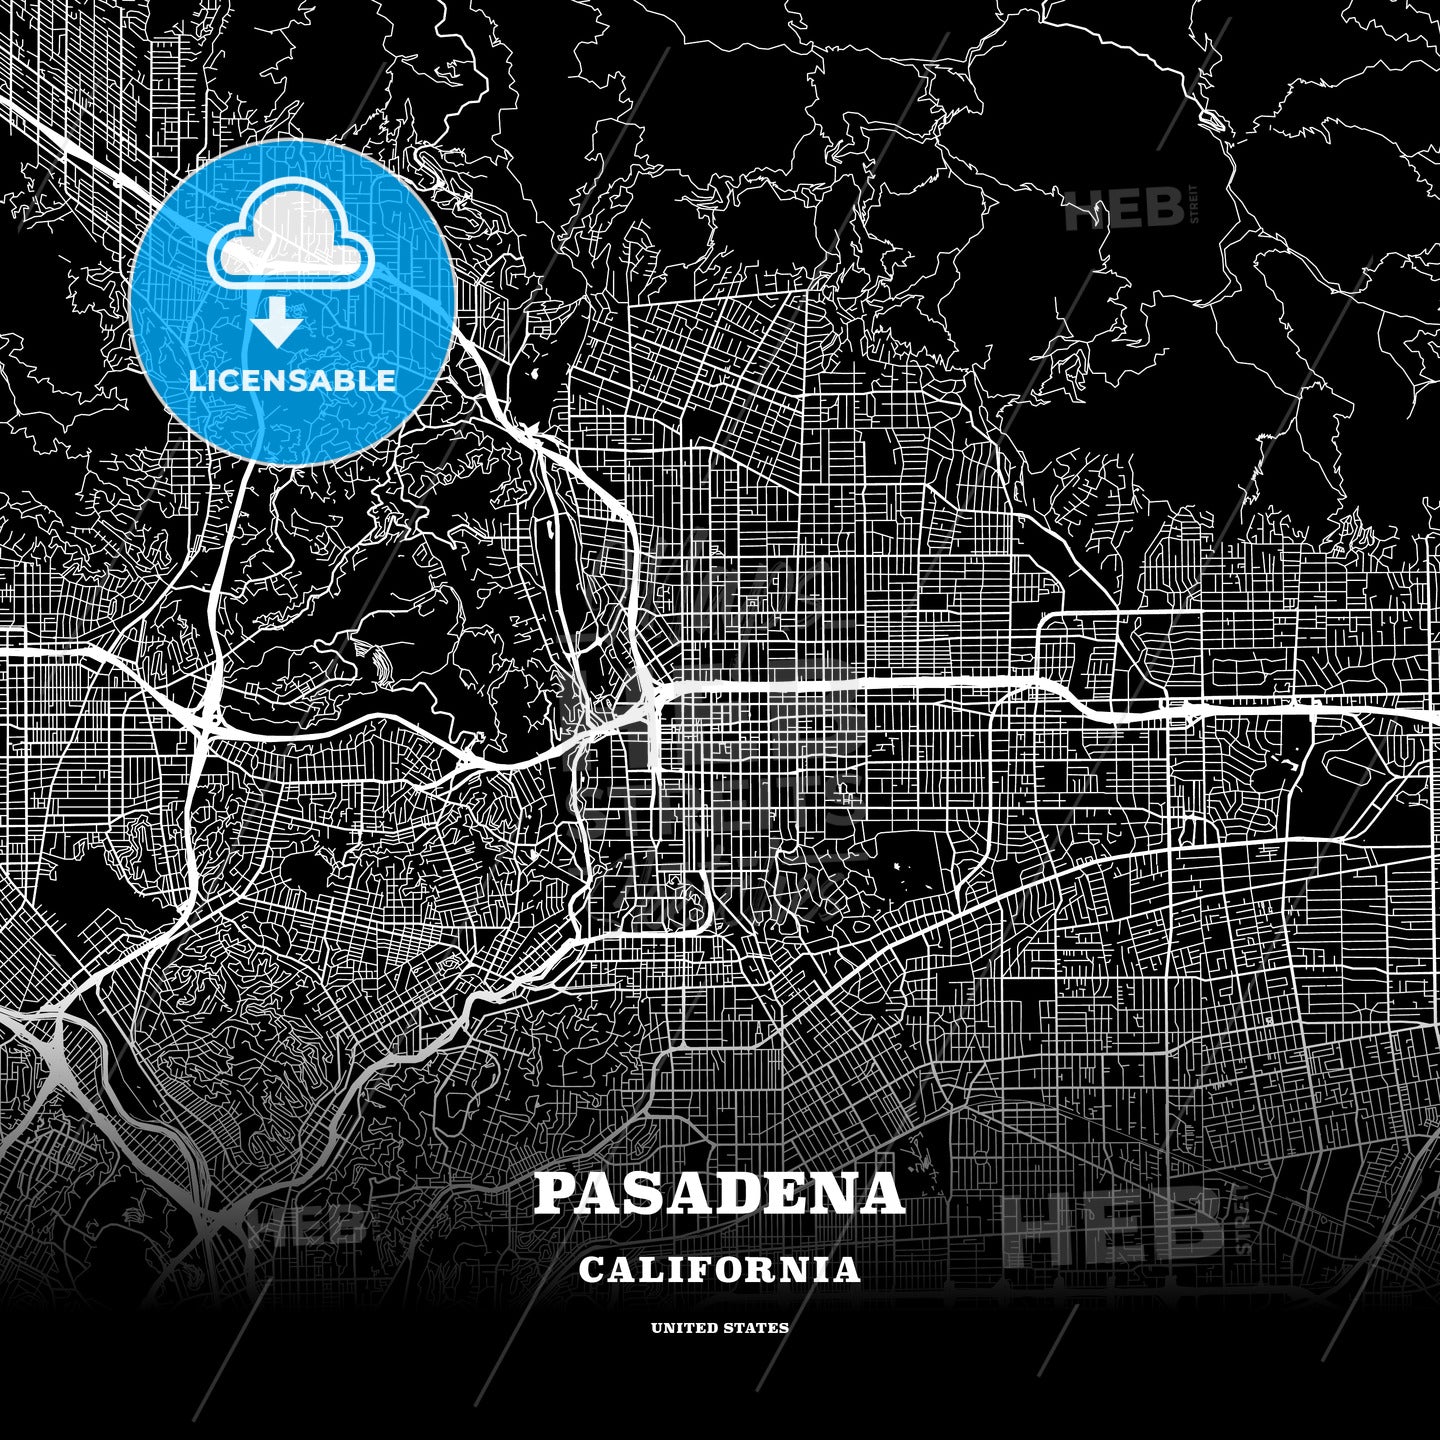 Pasadena, California, USA map